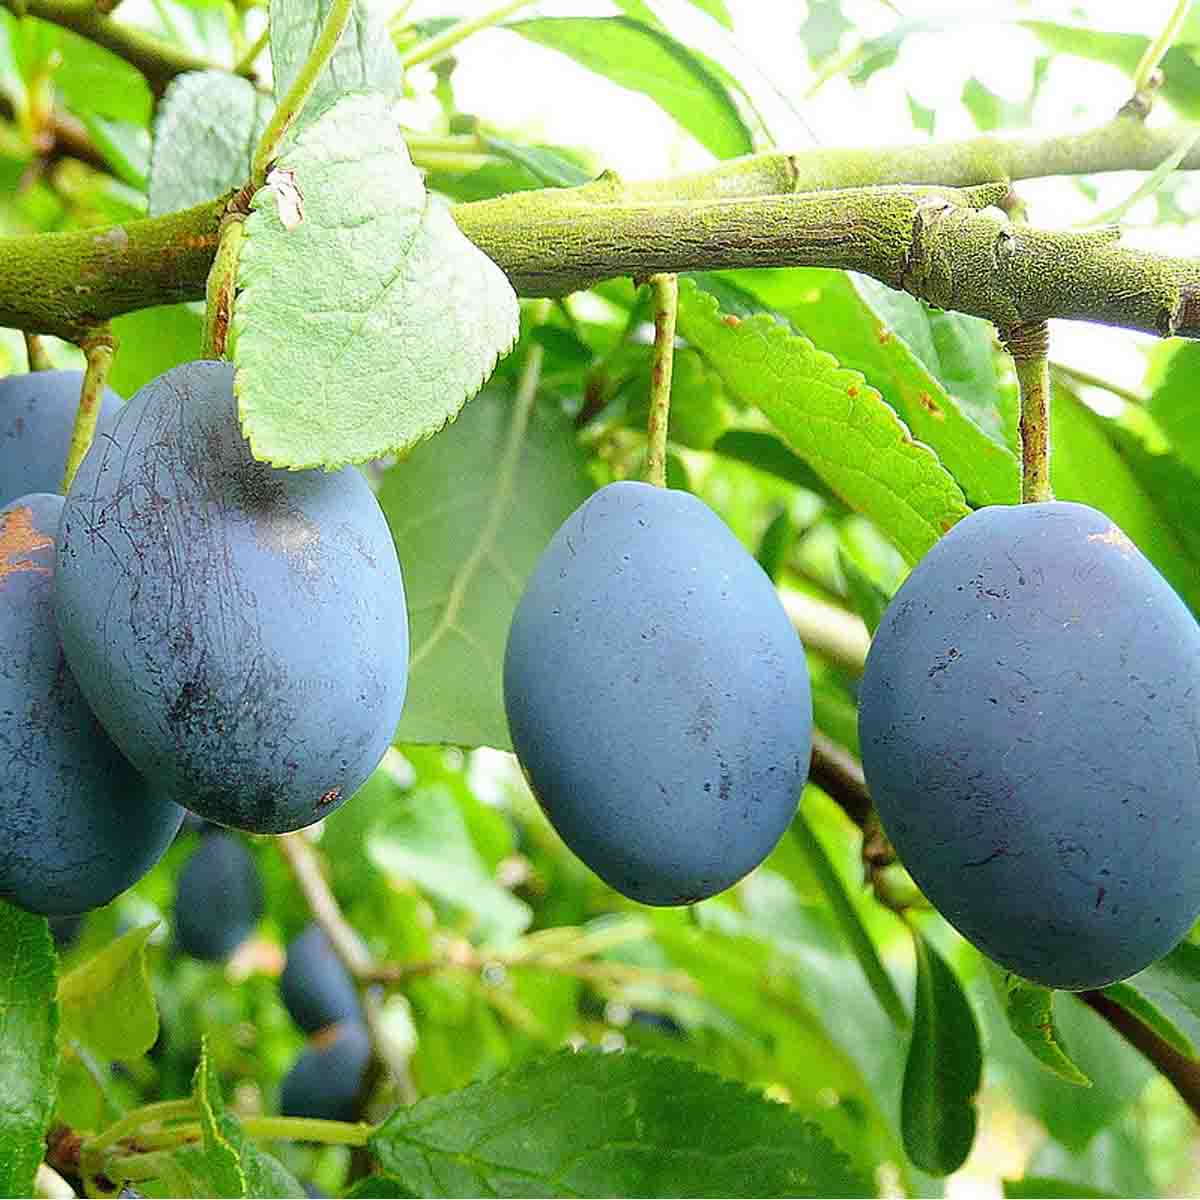 A plum tree